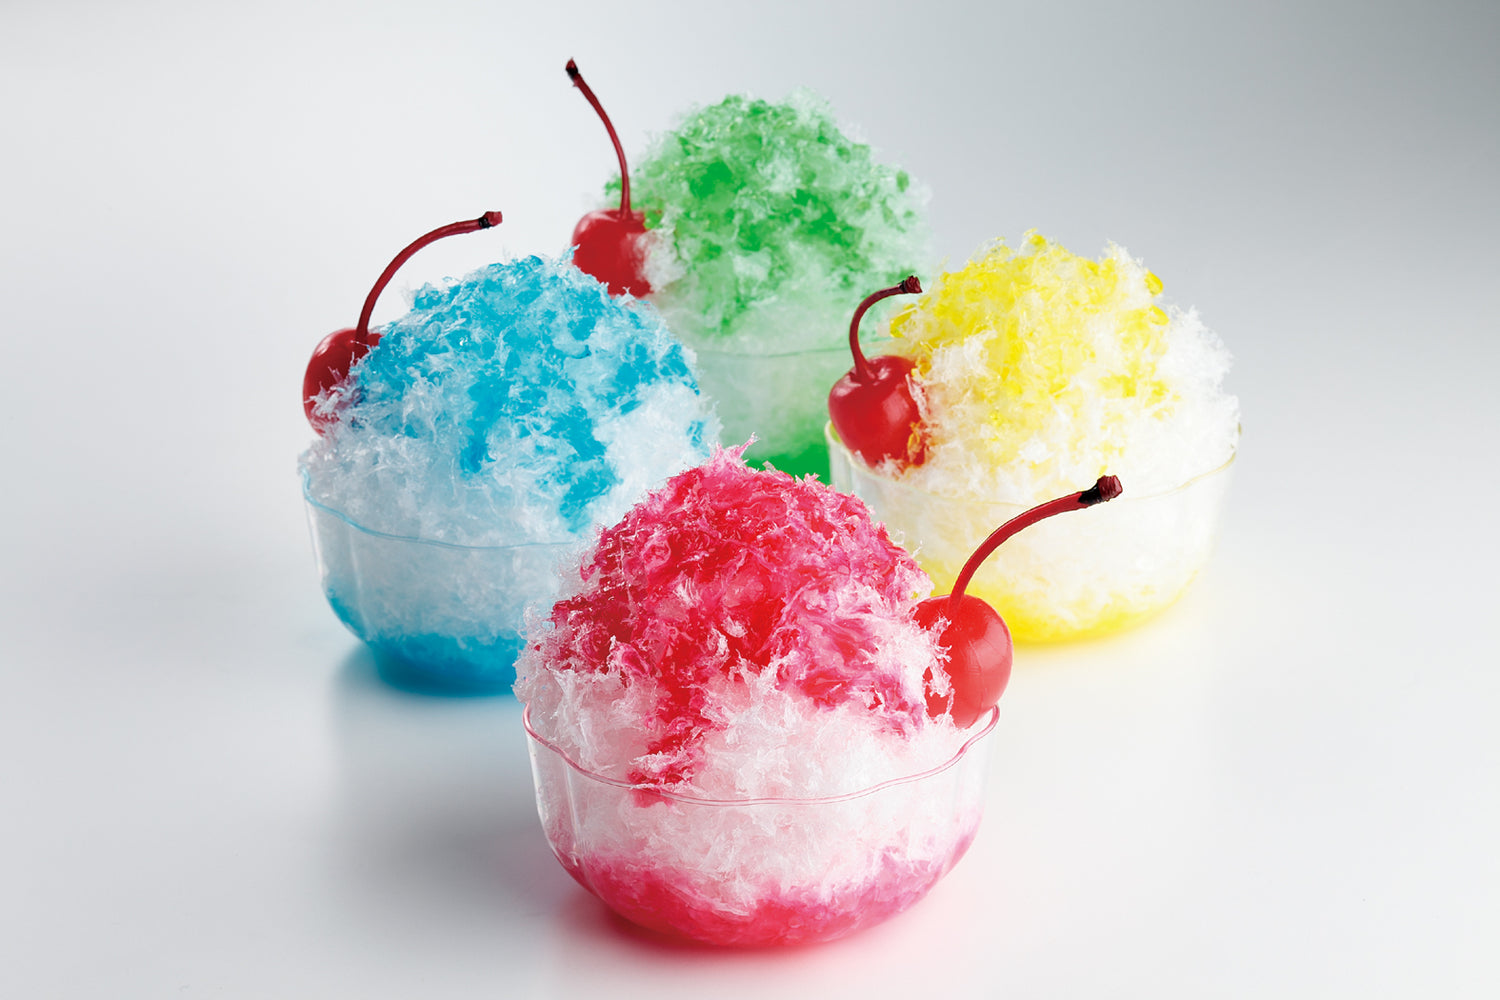 自分でつくる食品サンプル製作キット「さんぷるん かき氷」の完成イメージ画像です。